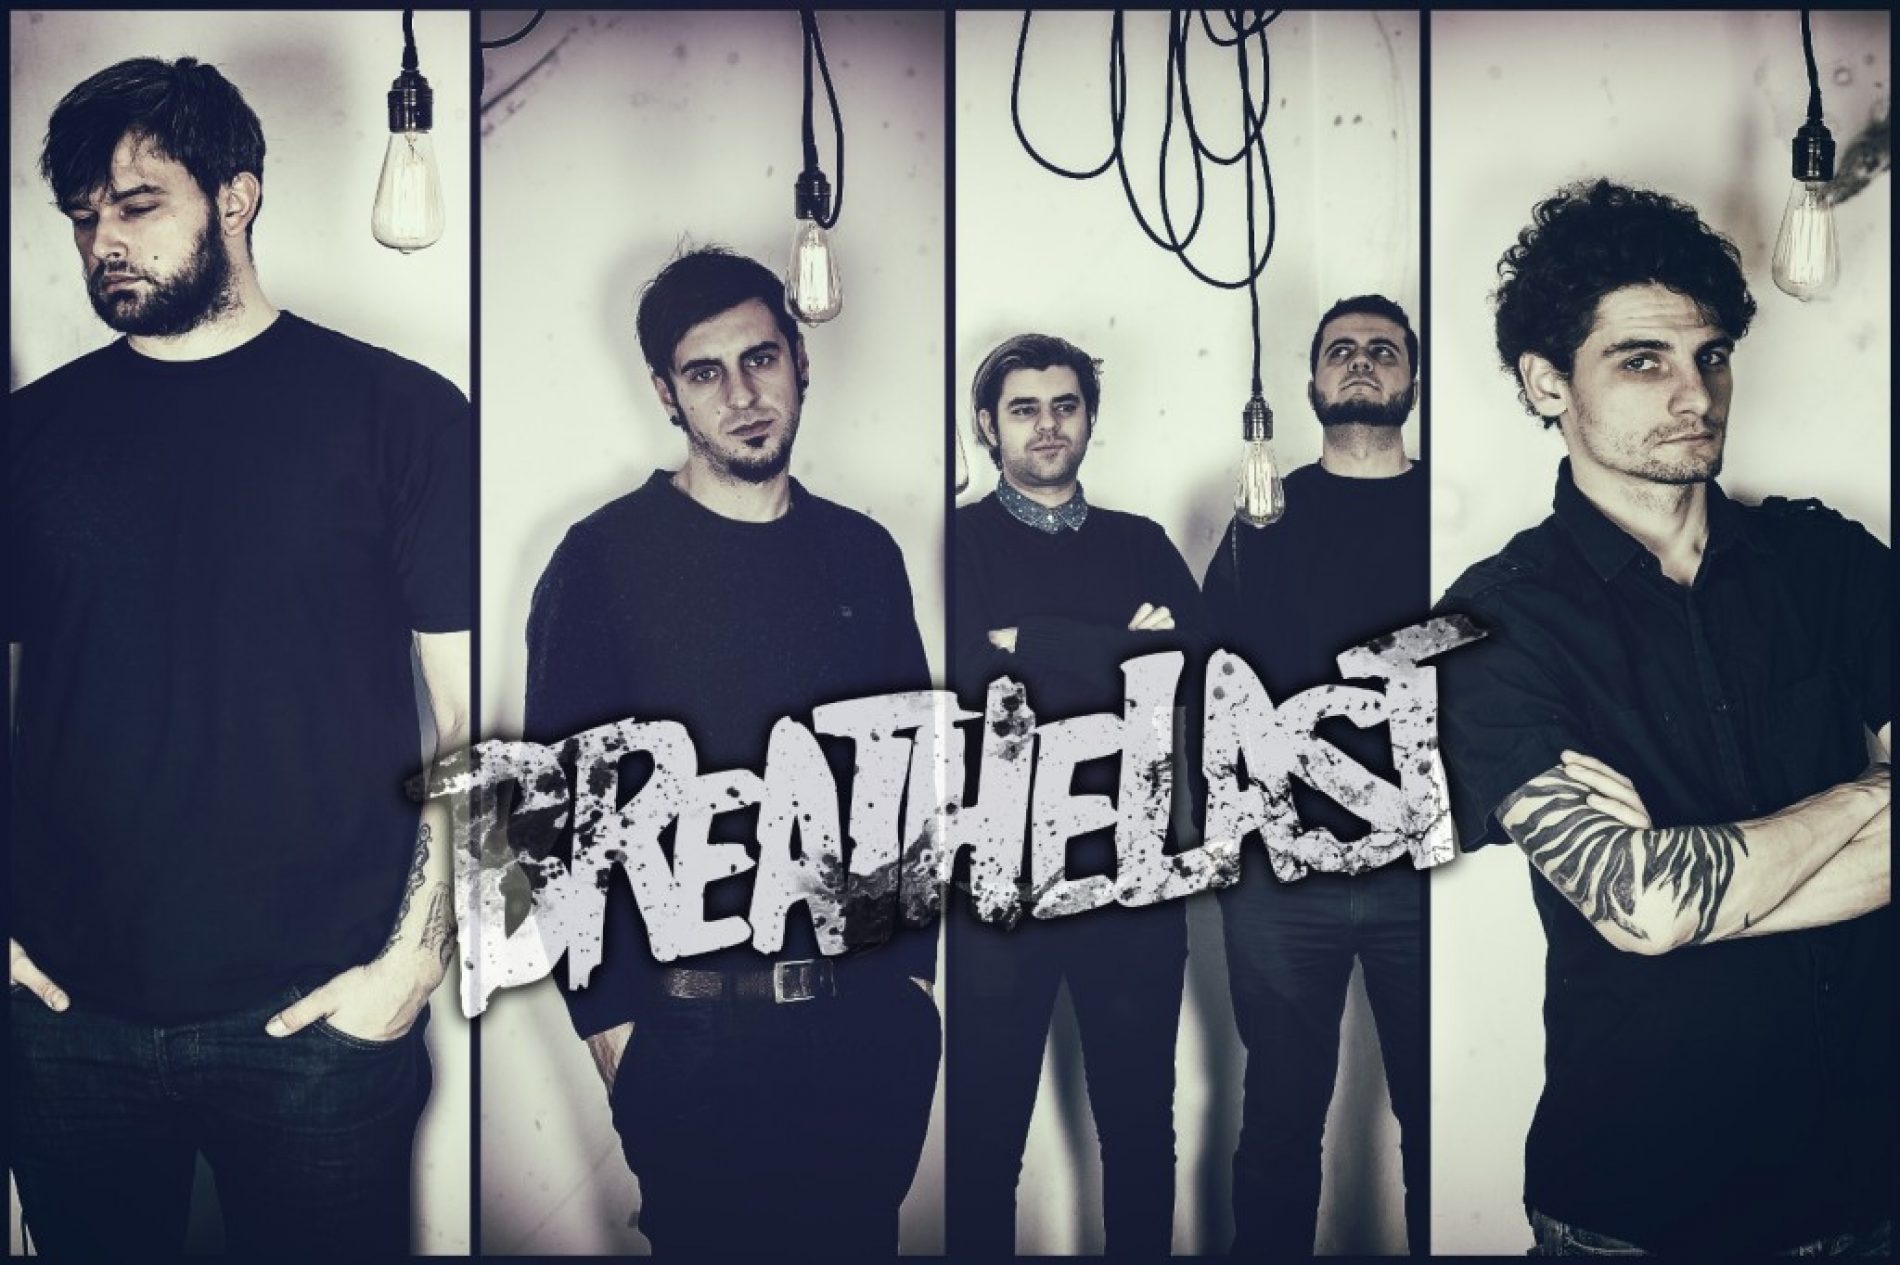 Breathelast au facut primul lor cover (teaser video)